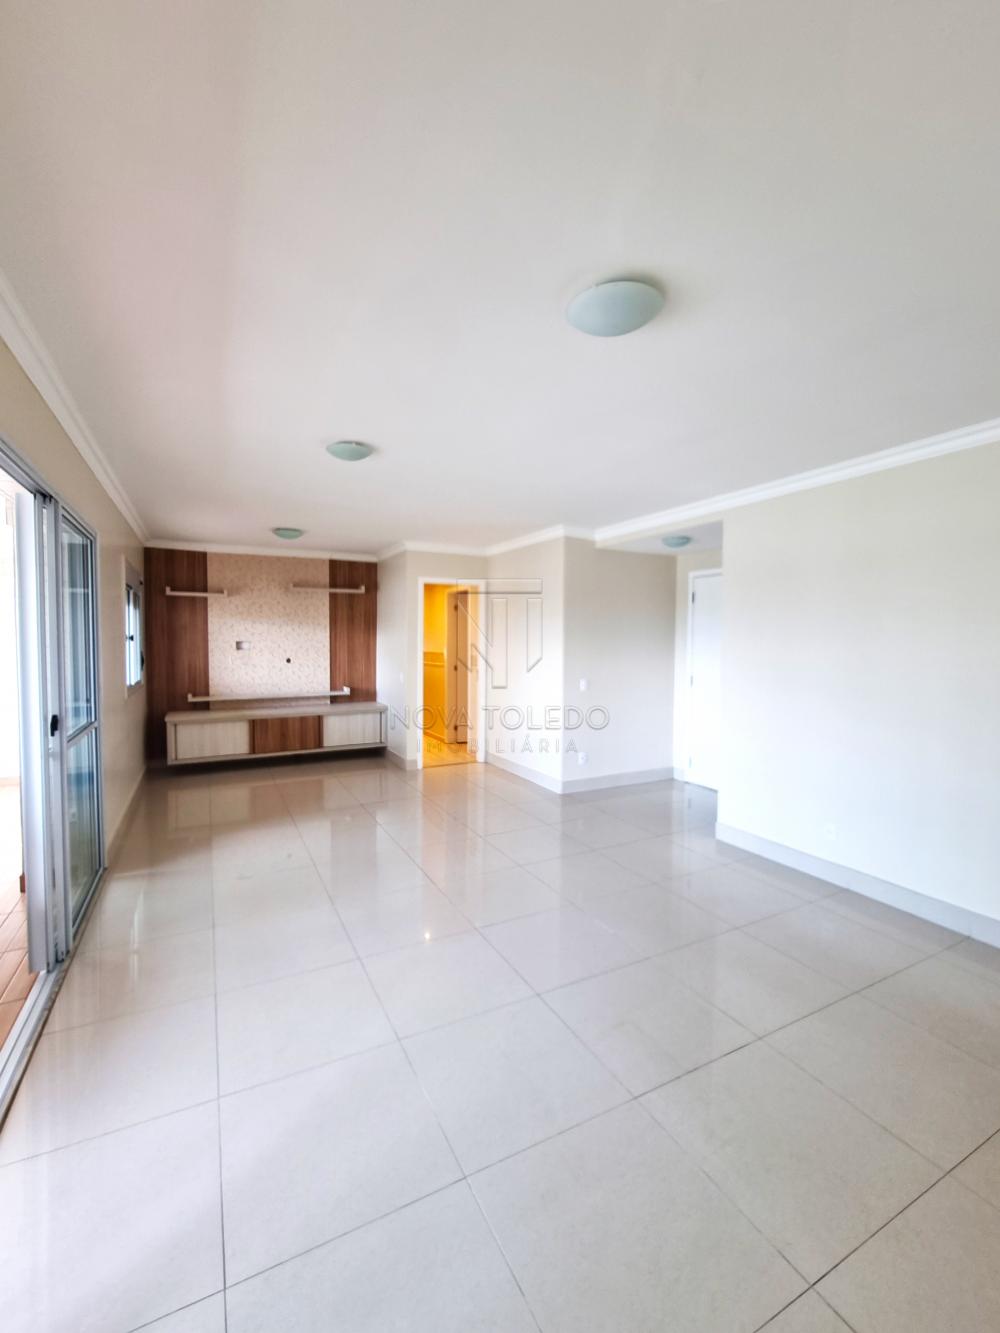 Alugar Apartamento / Padrão em São José dos Campos R$ 5.000,00 - Foto 4